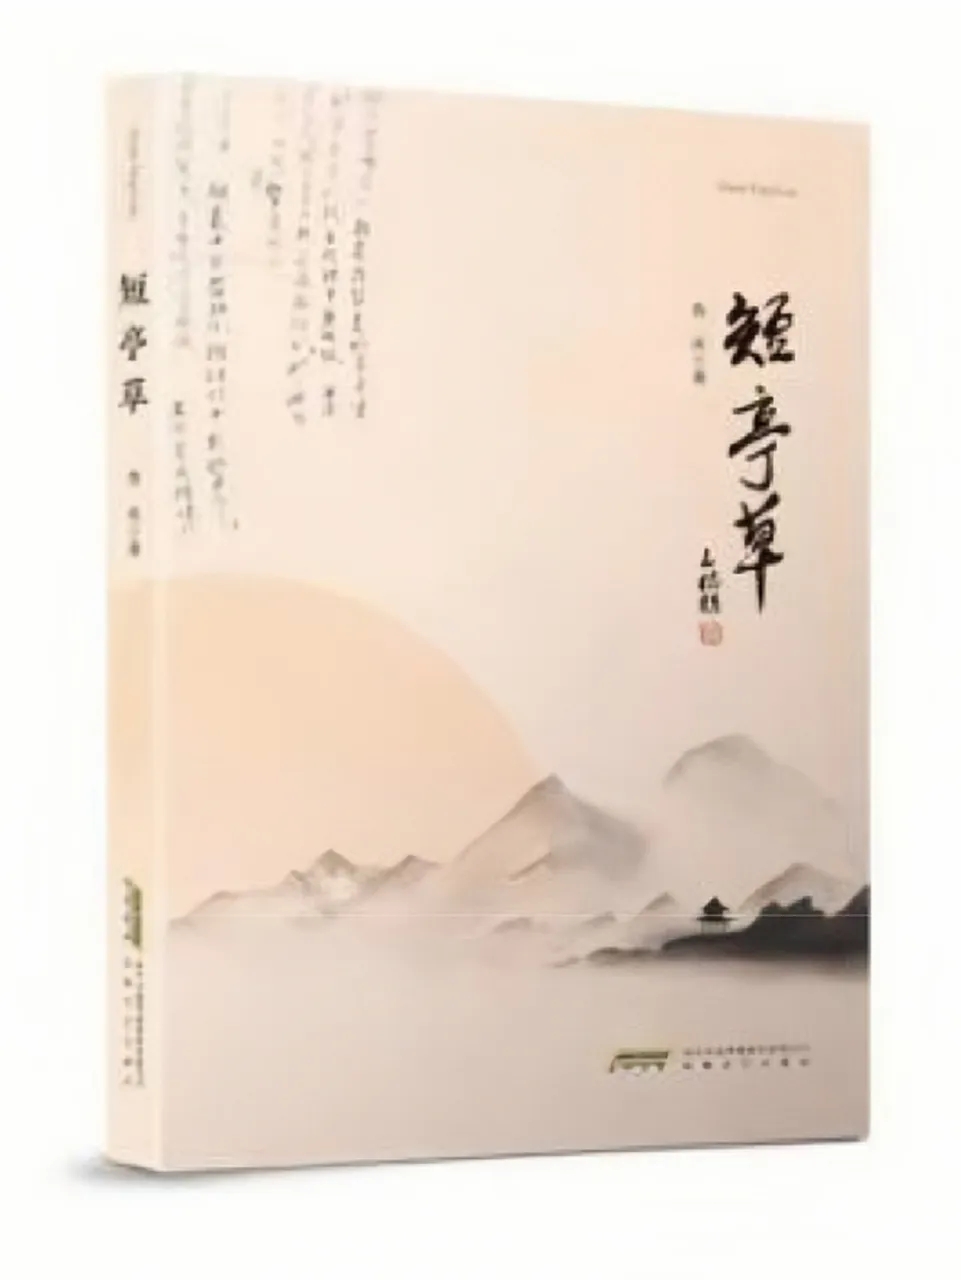 新书发布 | 作家鲁庆诗词集《短亭草》出版发行